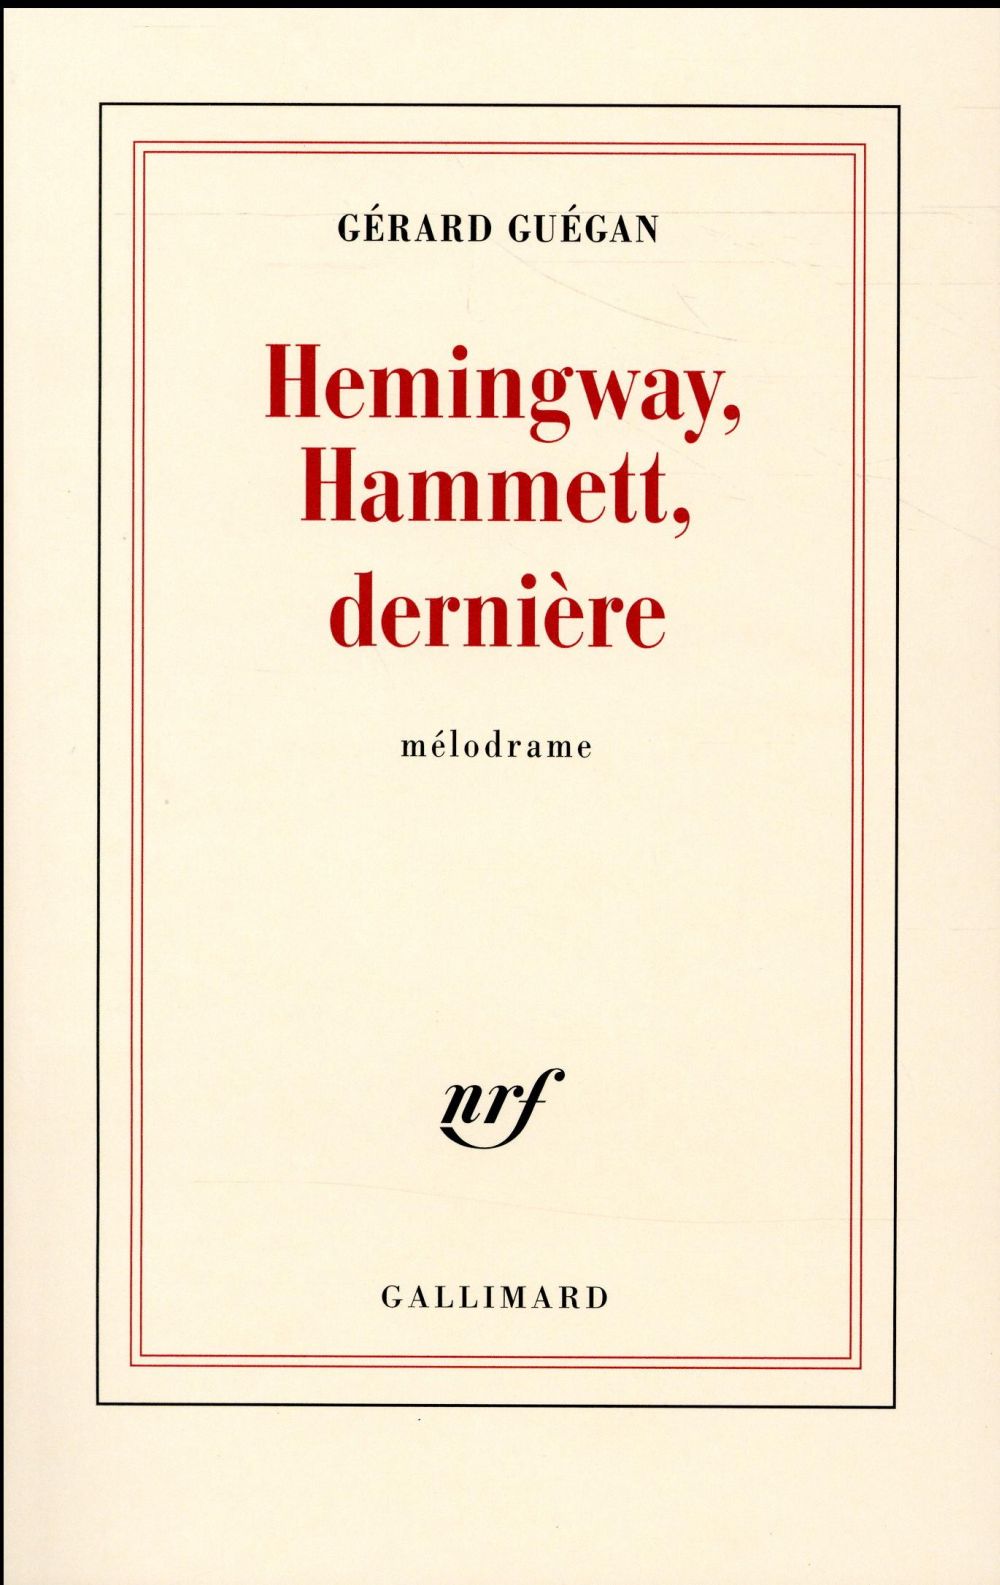 HEMINGWAY, HAMMETT, DERNIERE - MELODRAME